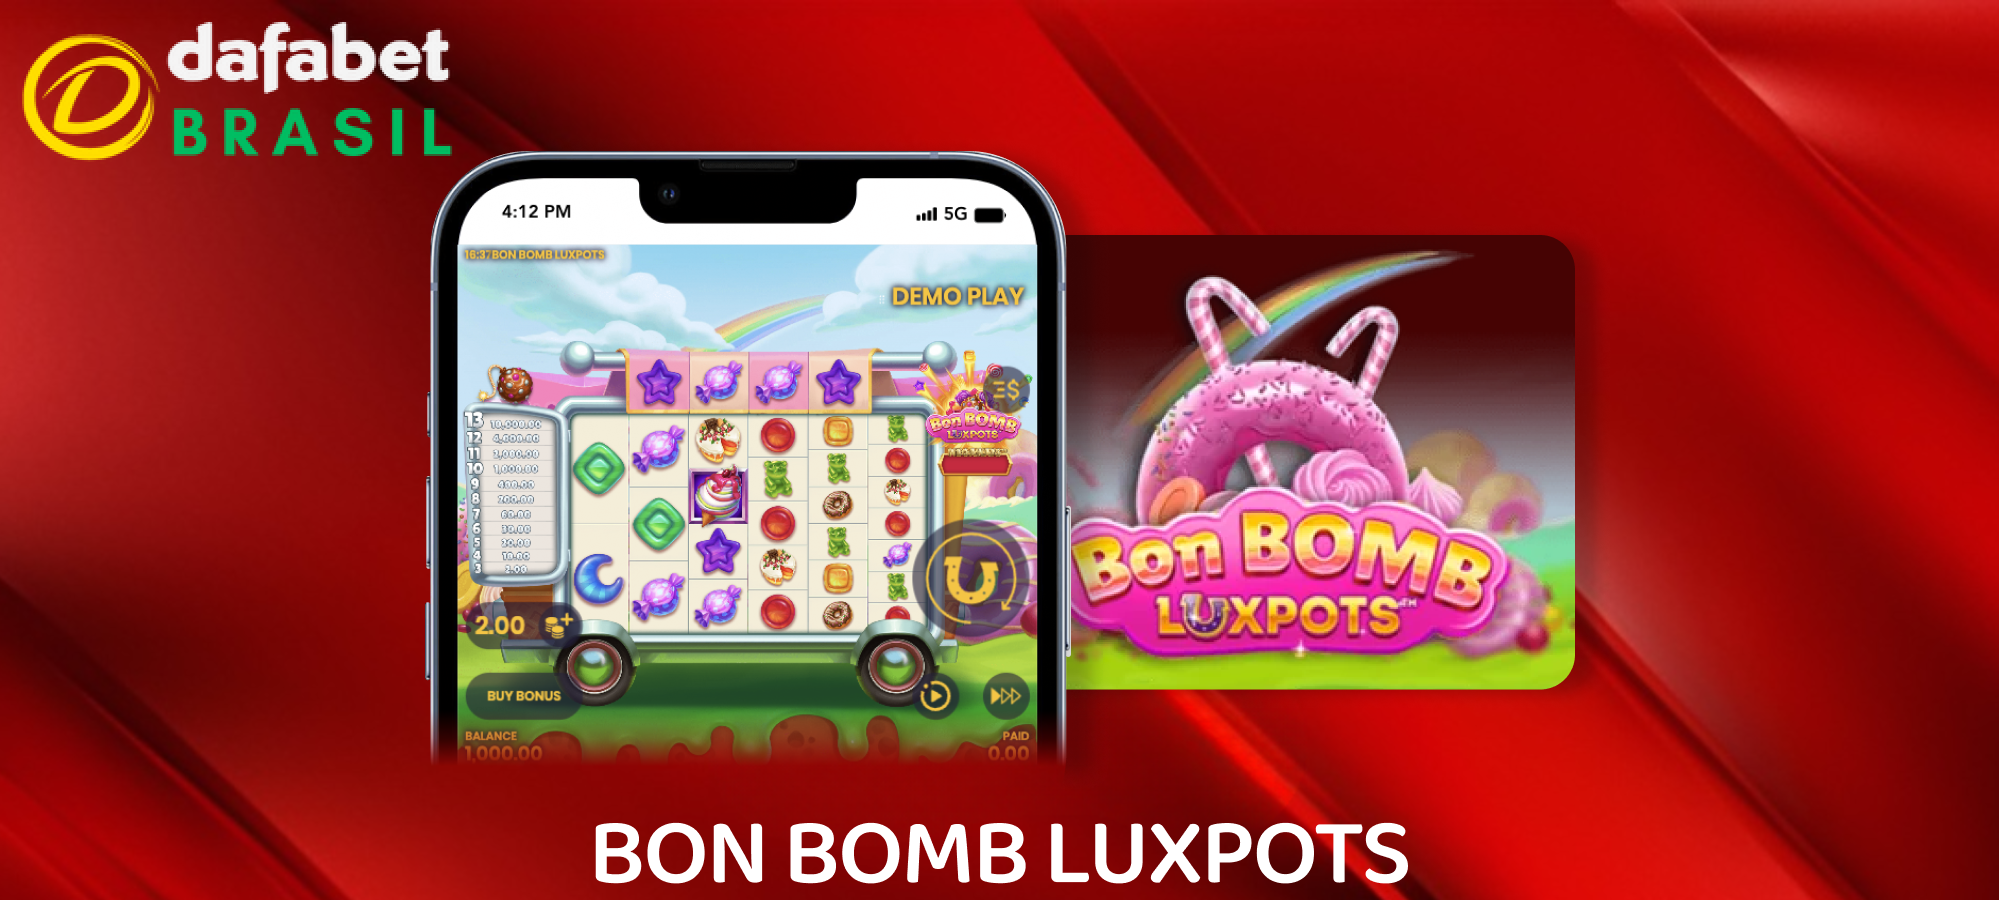 Bon Bomb Luxpots para jogadores Dafabet do Brasil